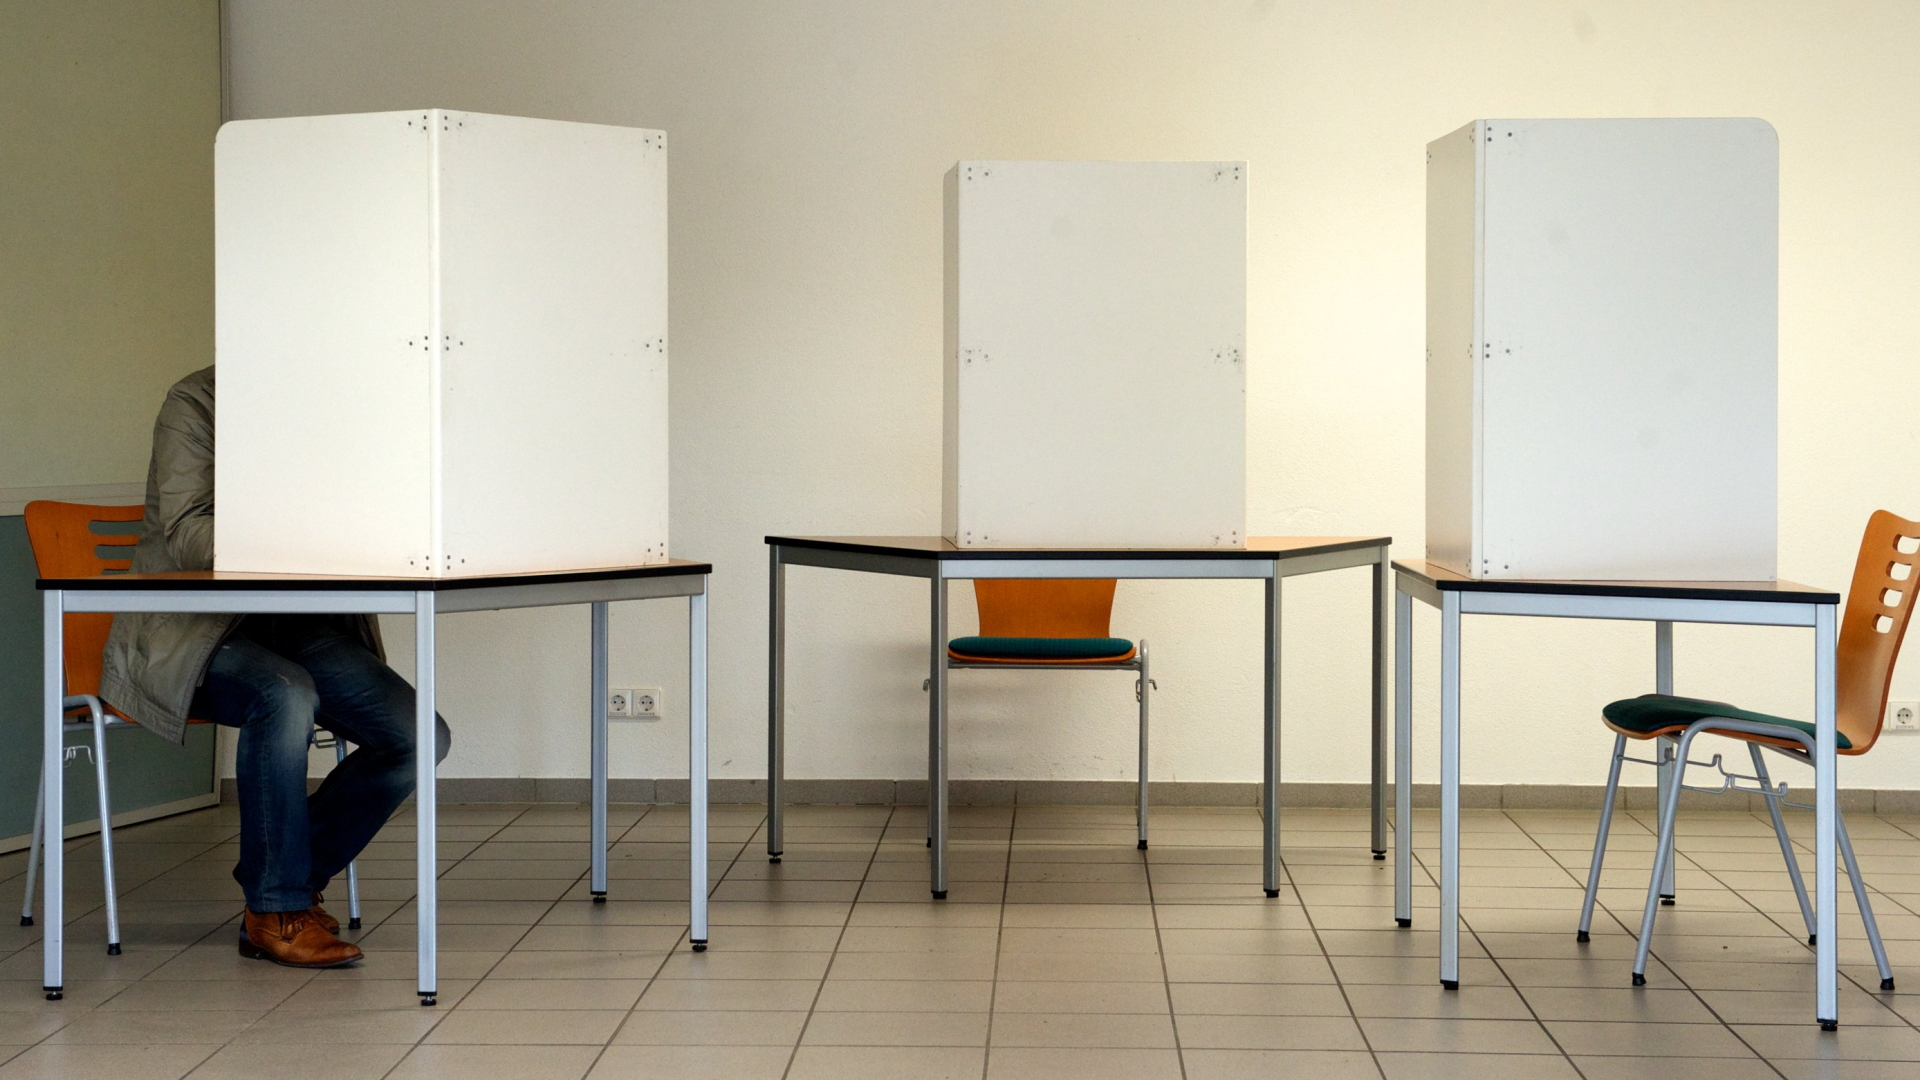 Ein einzelner Mann sitzt in einer von drei Wahlkabinen. | Bildquelle: dpa